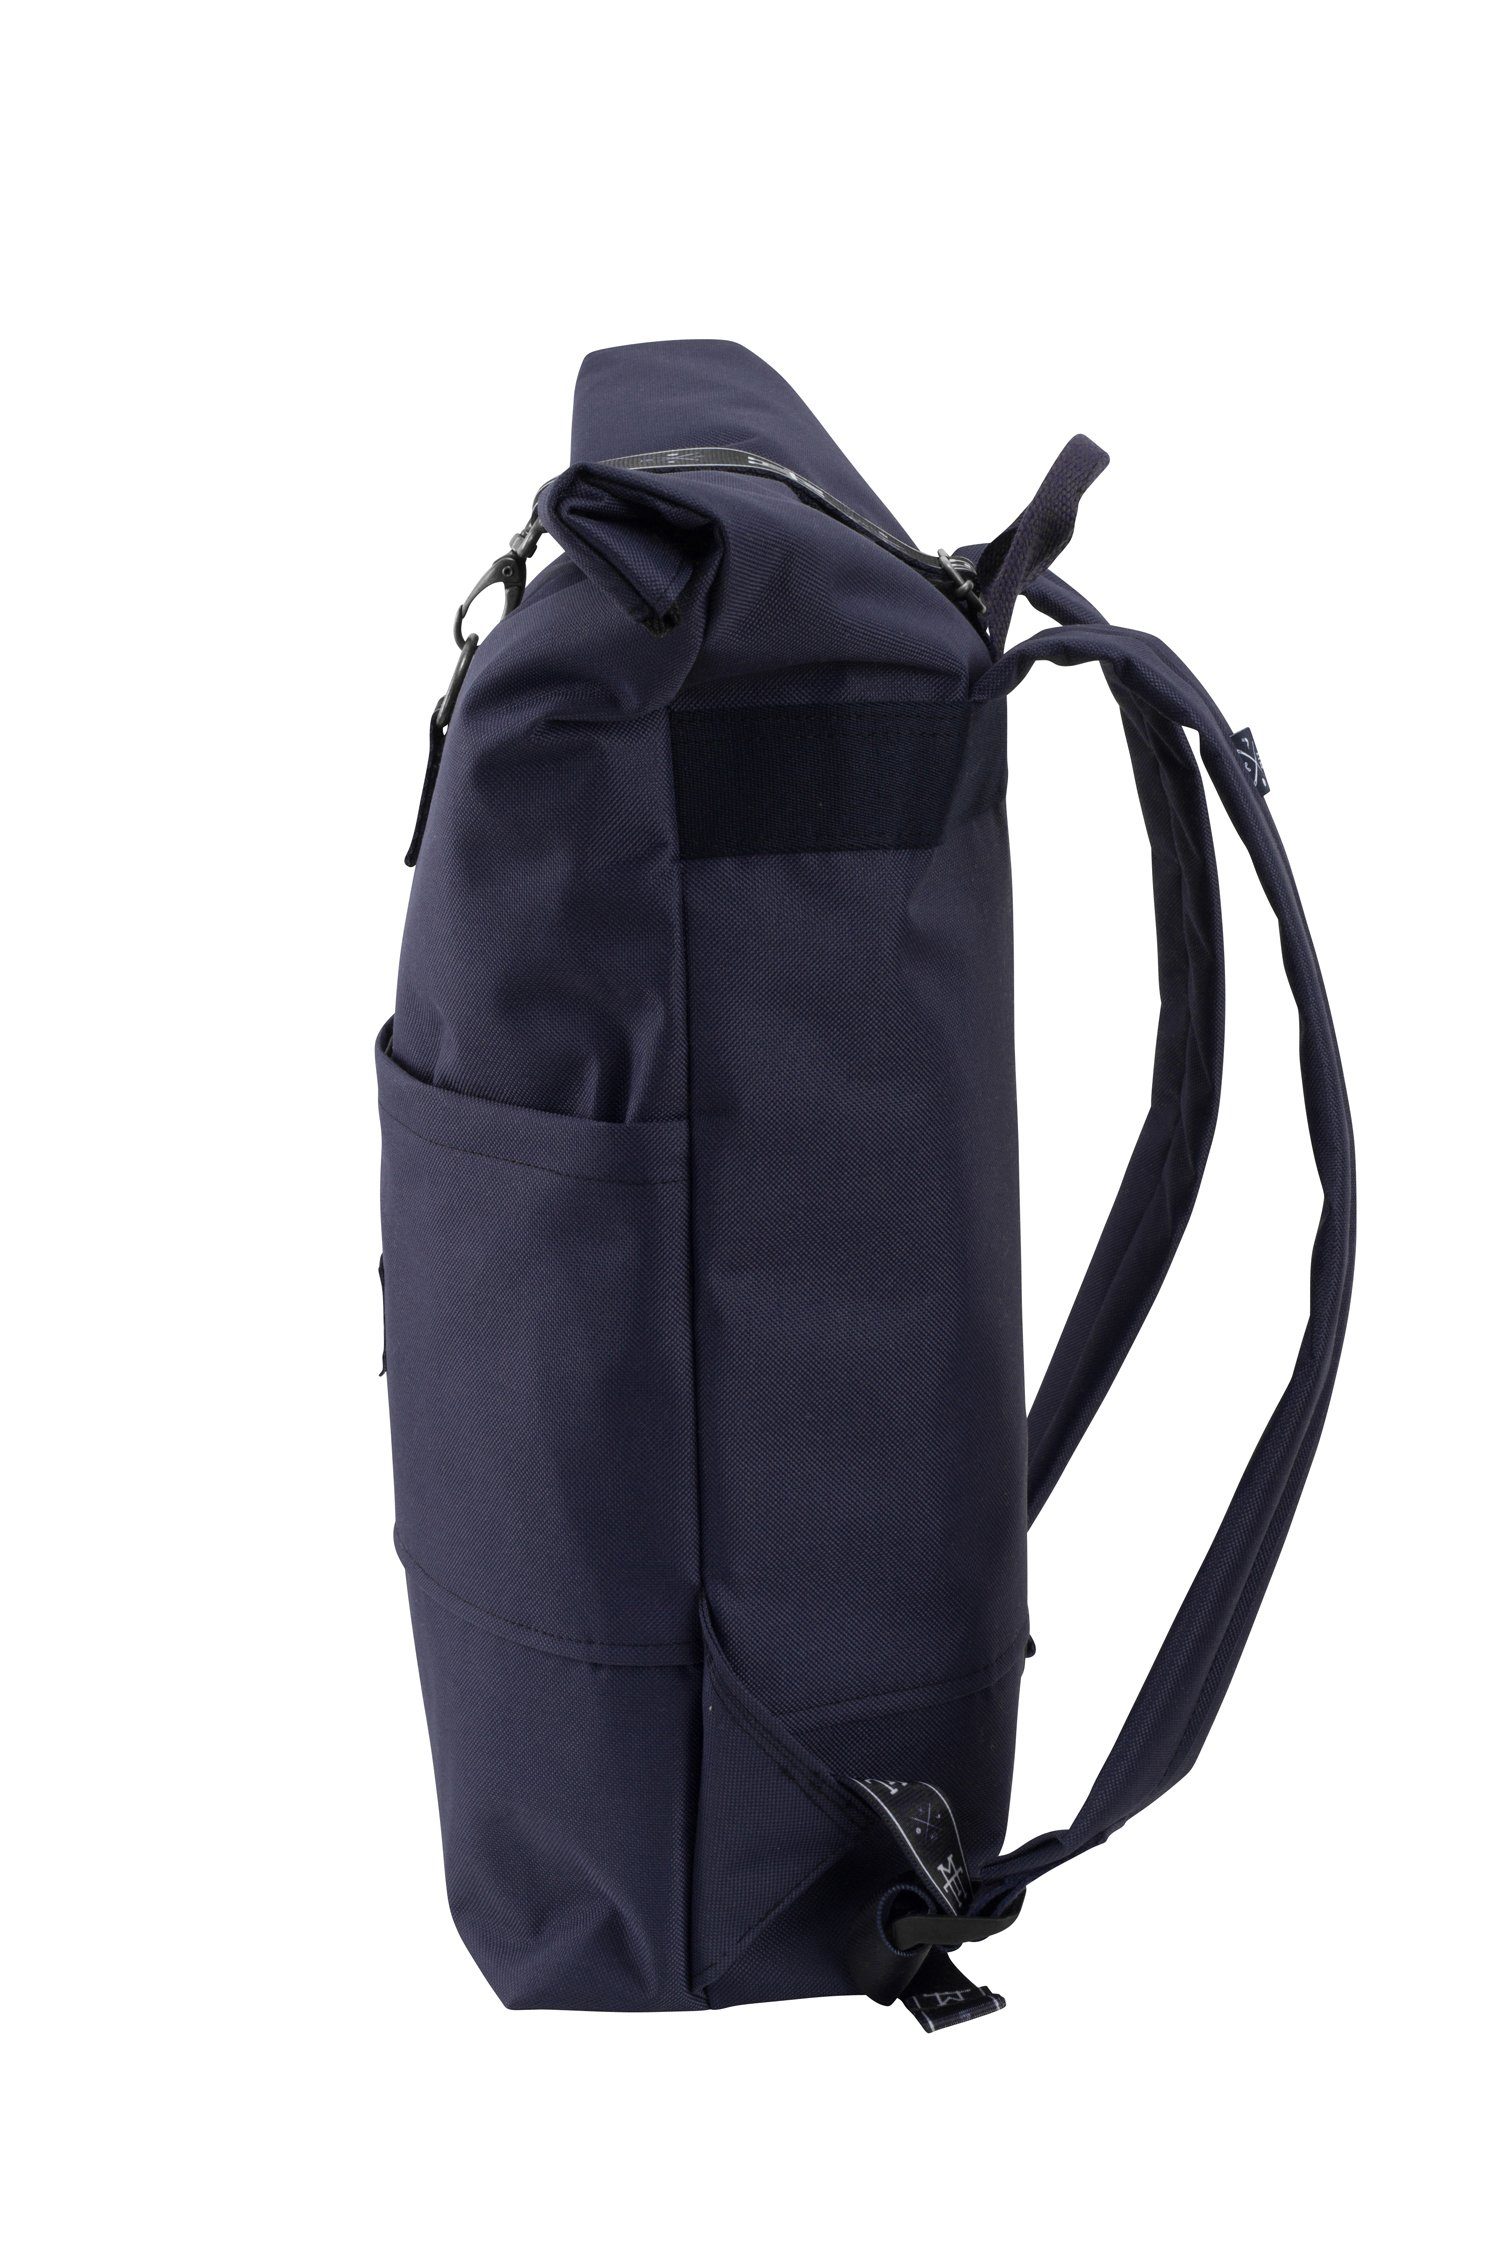 Manufaktur13 Tagesrucksack Roll-Top Rucksack Edition - Taped verstellbare mit wasserdicht/wasserabweisend, Backpack Navy Gurte Rollverschluss